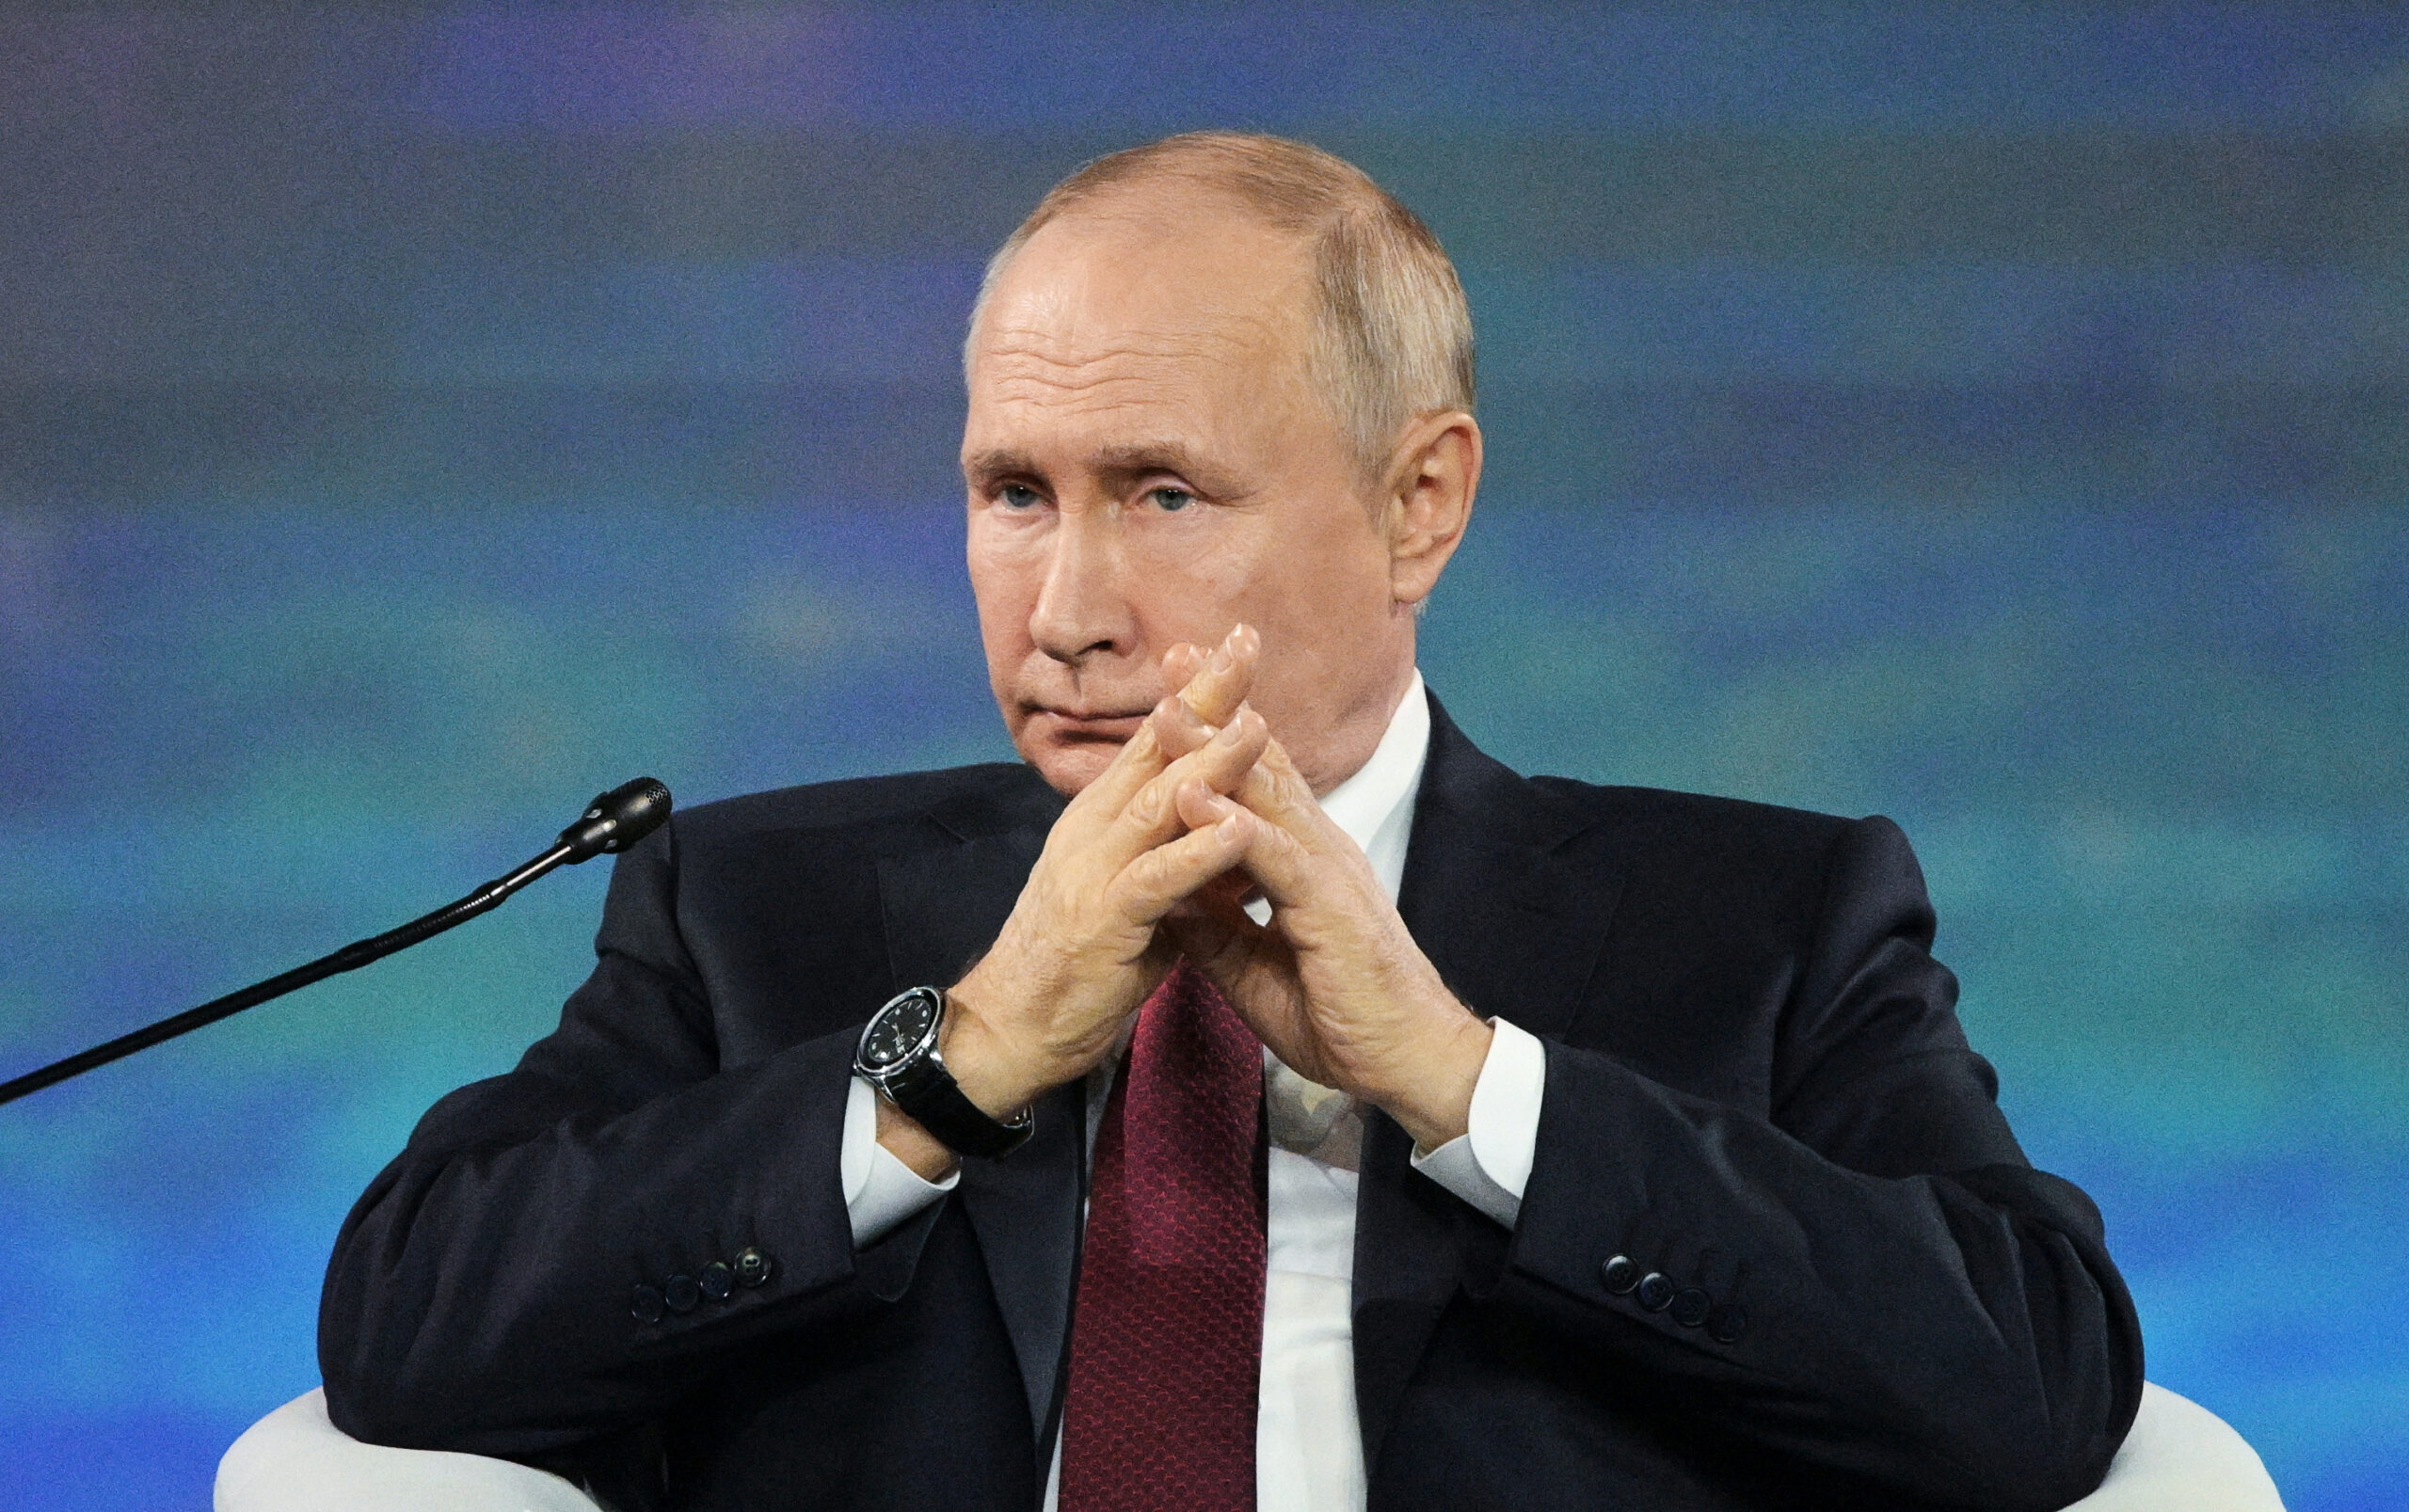 Β.Πούτιν: Έδωσε στη δημοσιότητα έγγραφο συμφωνίας ειρήνης με την Ουκρανία αλλά που το Κίεβο δεν τήρησε ποτέ